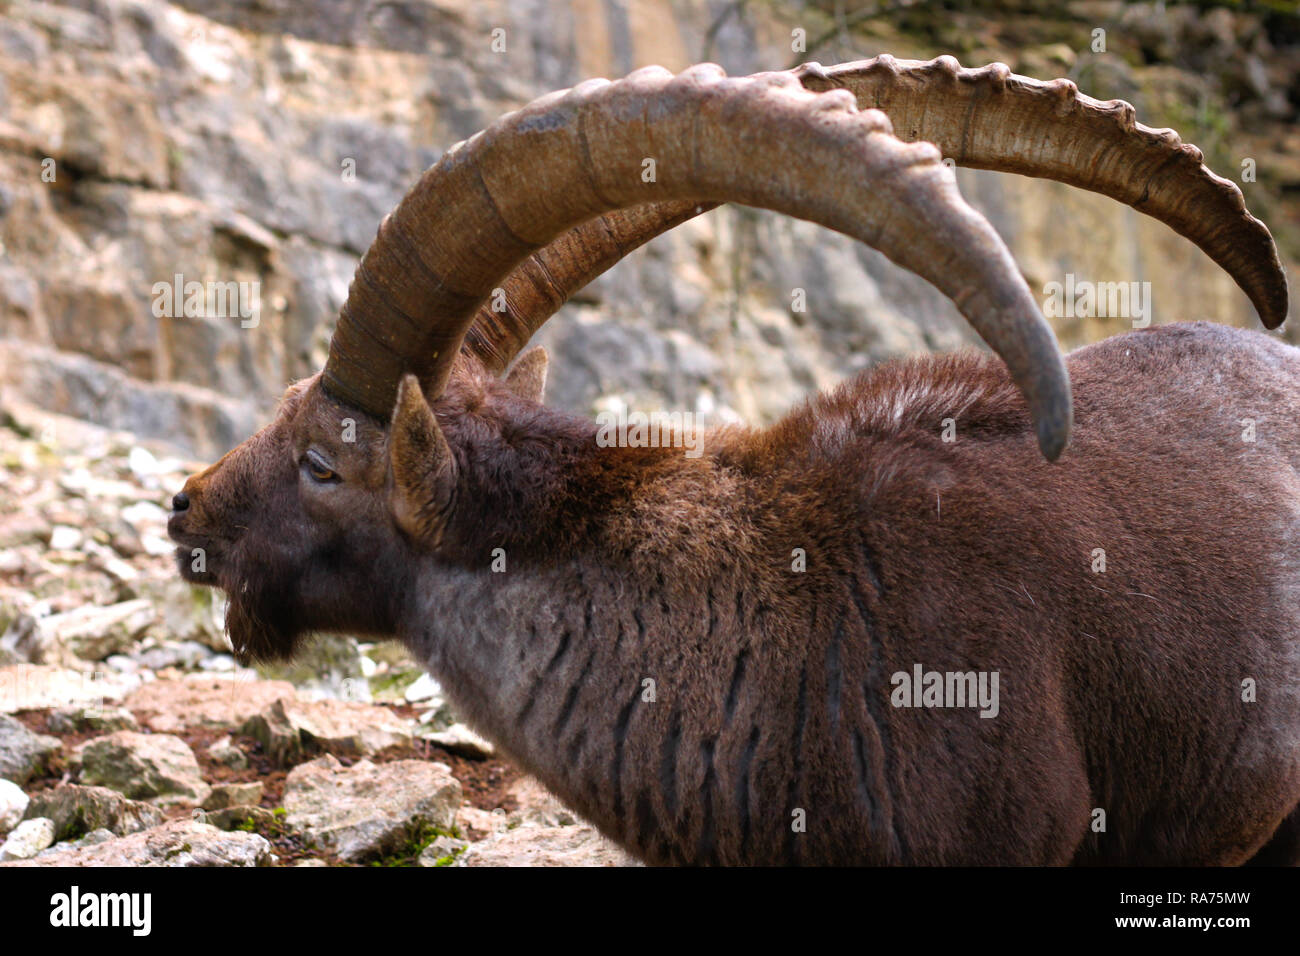 Der Steinbock ist eine Art wilde Ziege, die in den Alpen. Männlichen Steinböcke haben riesige Hörner zeigt ihr Alter. Stockfoto